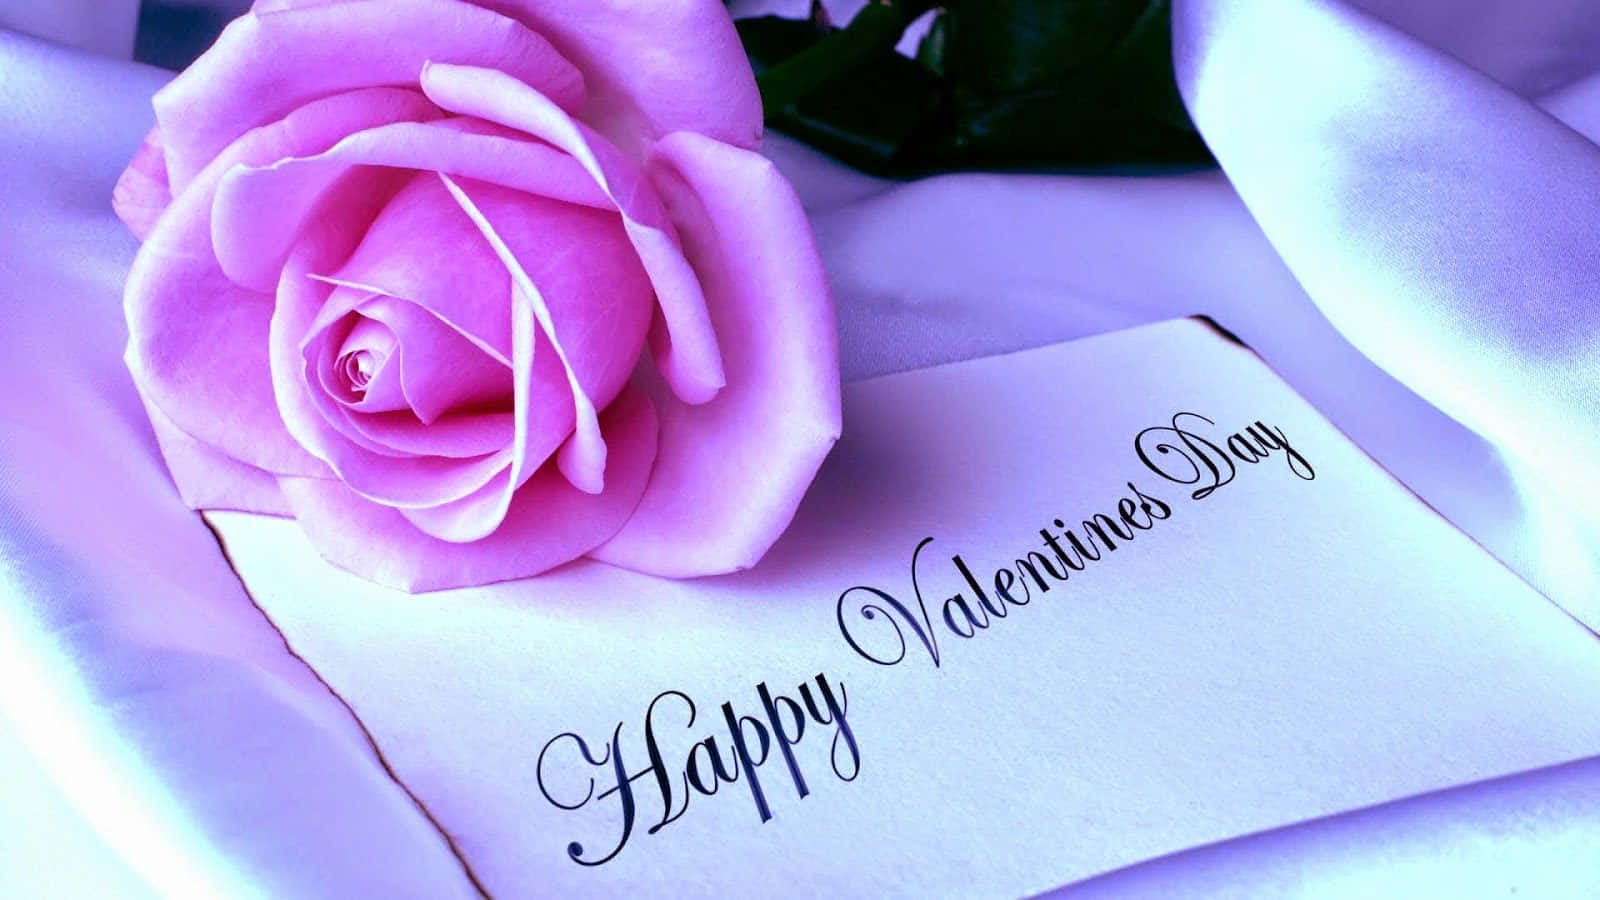 Feiernsie Ihre Liebe Dieses Valentinstags Mit Einem Schönen, Romantischen Hintergrund.